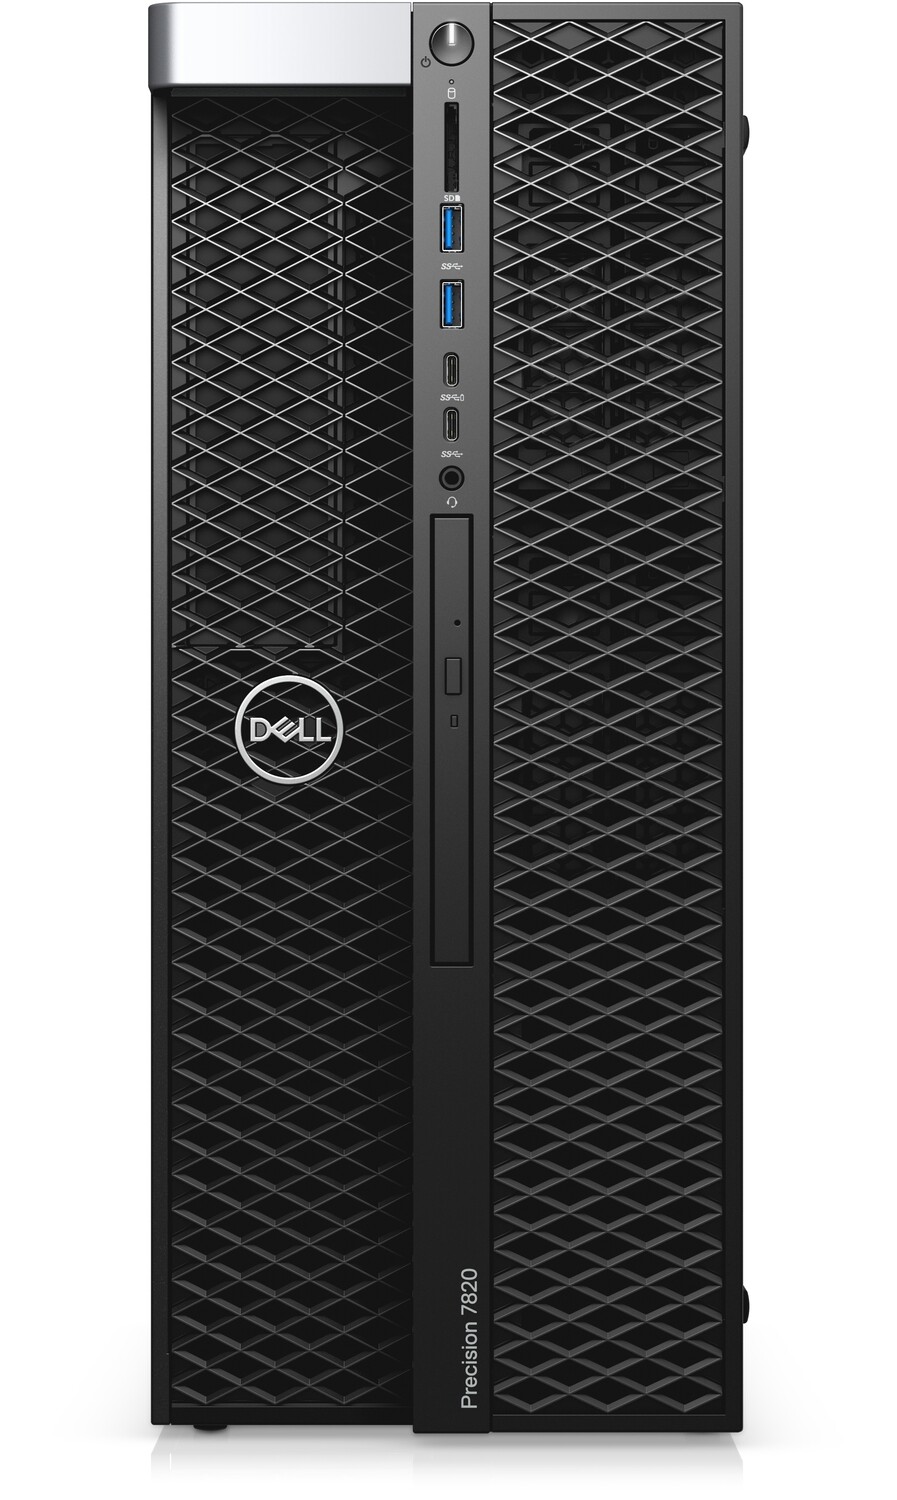 Dell Precision 7820 Tower Dual 6 Core Intel Xeon Bronze 3104 (Total 12 Cores) | 32GB | 1TB | Quadro 2000 | Windows 10 Pro for Workstations